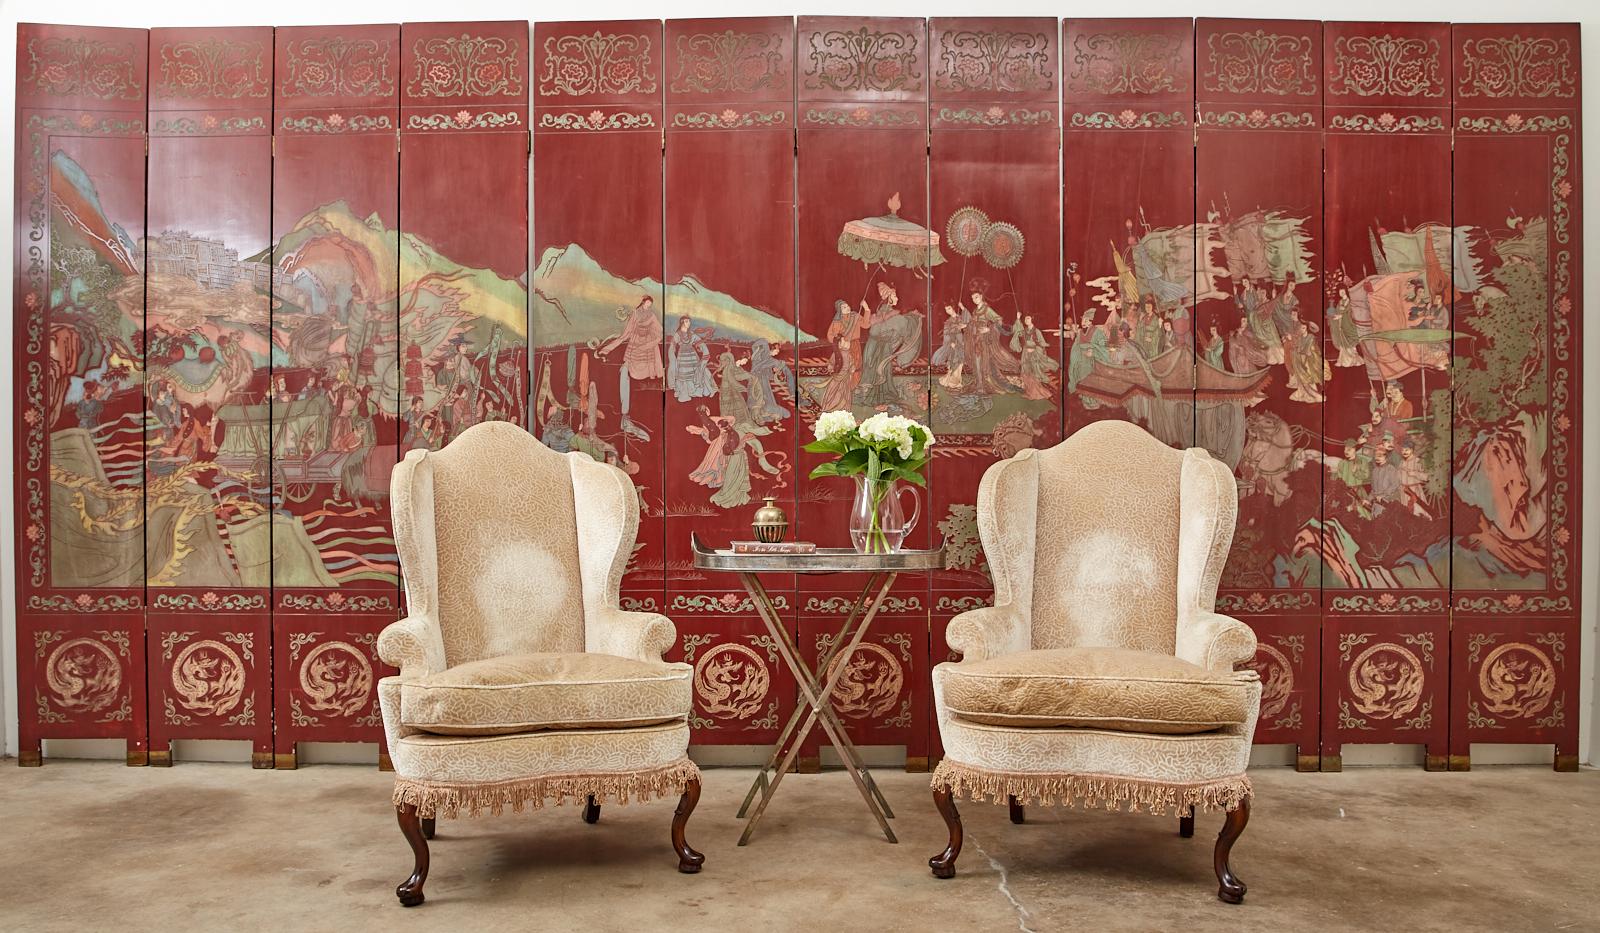 Monumentaler chinesischer Exportschirm mit zwölf rot lackierten Coromandel-Tafeln, die die chinesische mythologische daoistische Figur Xiwangmu (Königinmutter des Westens) darstellen. Bemerkenswerte großformatige Leinwand voller leuchtender Farben